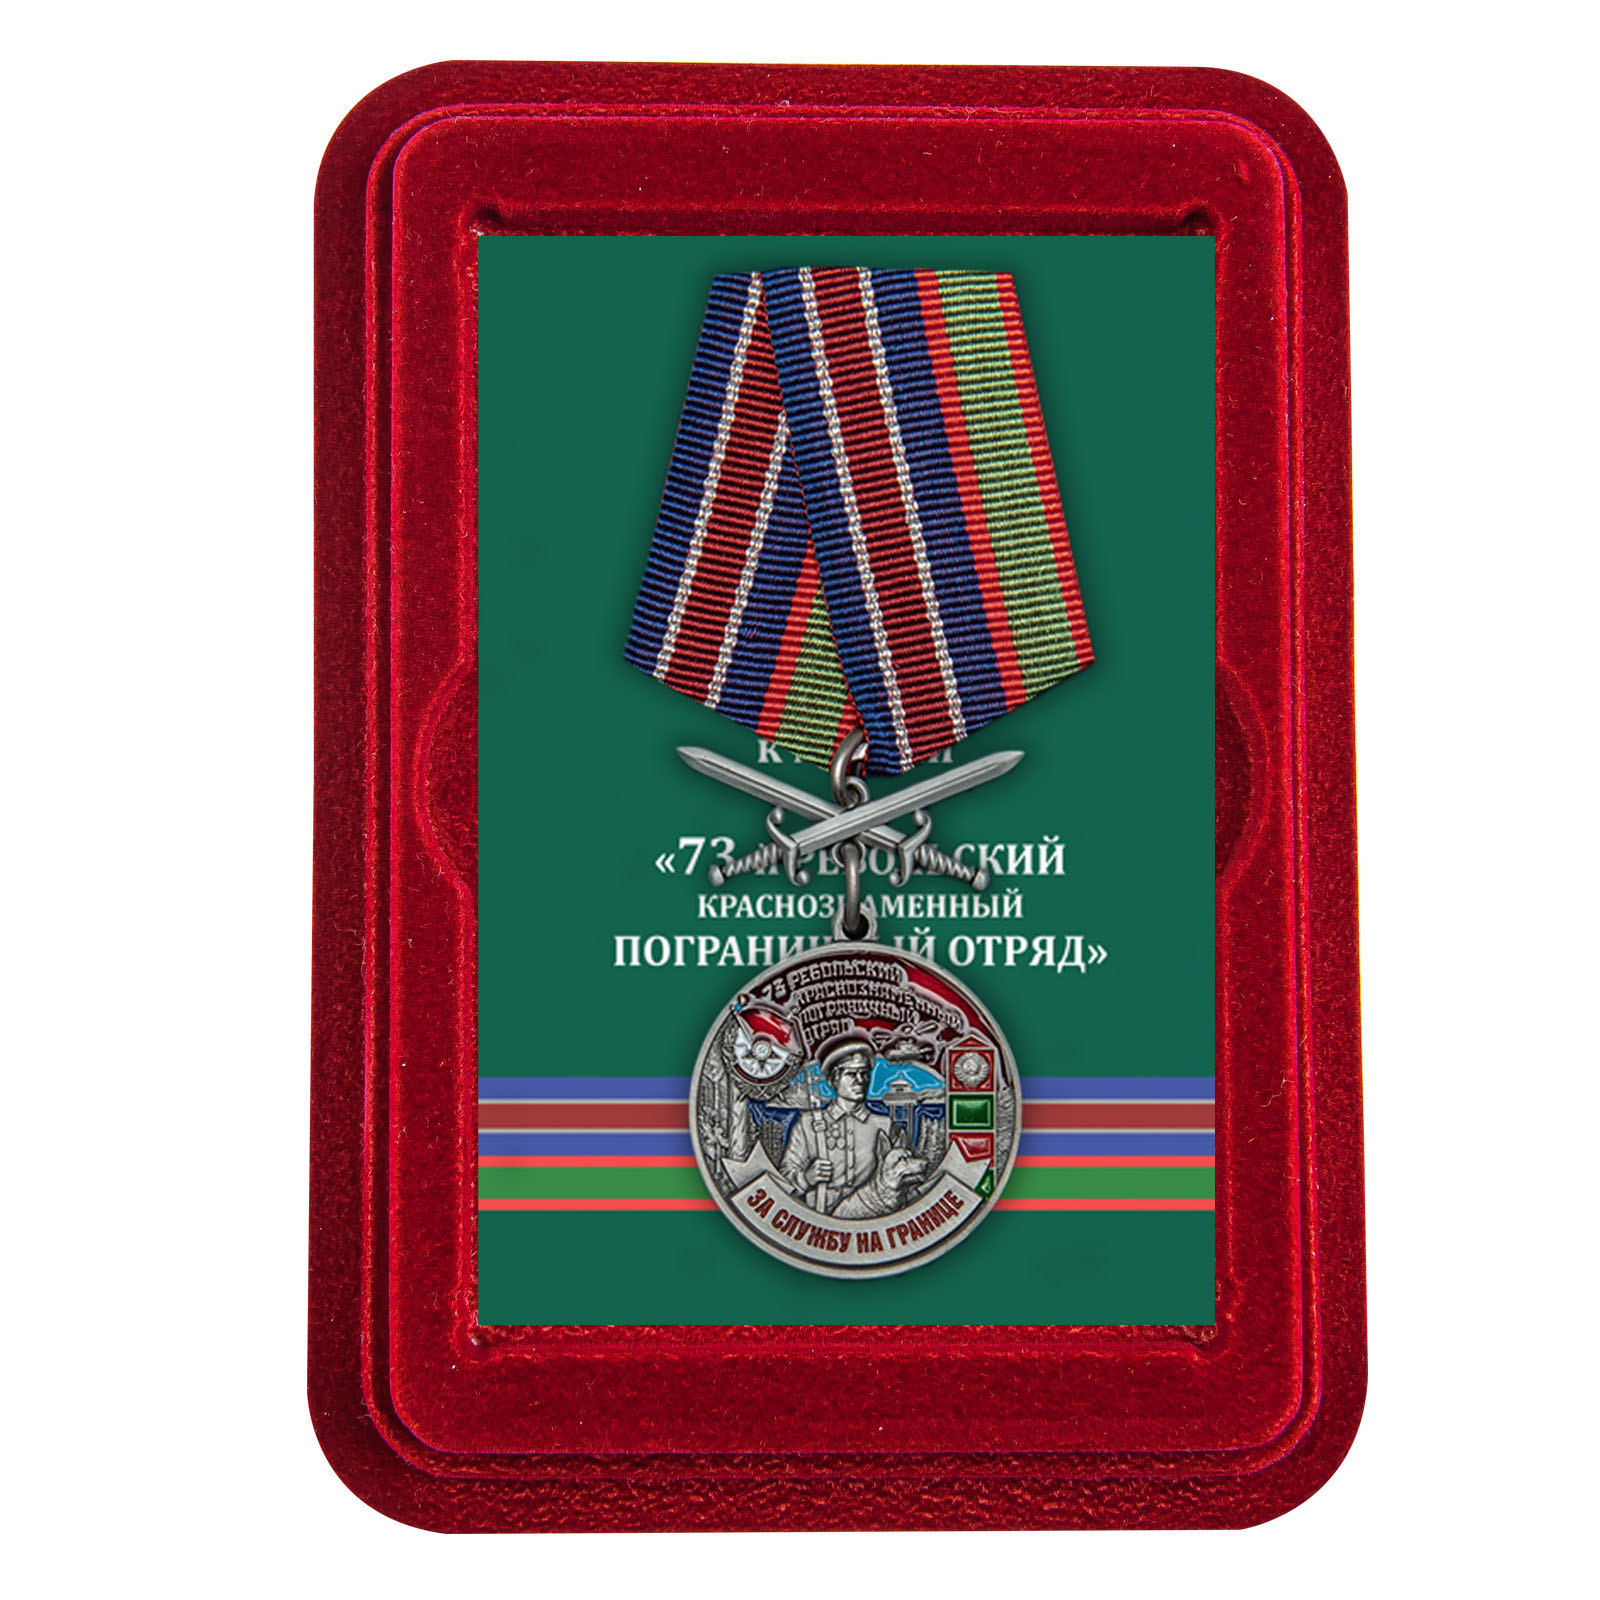 Купить медаль За службу в Ребольском пограничном отряде в подарок